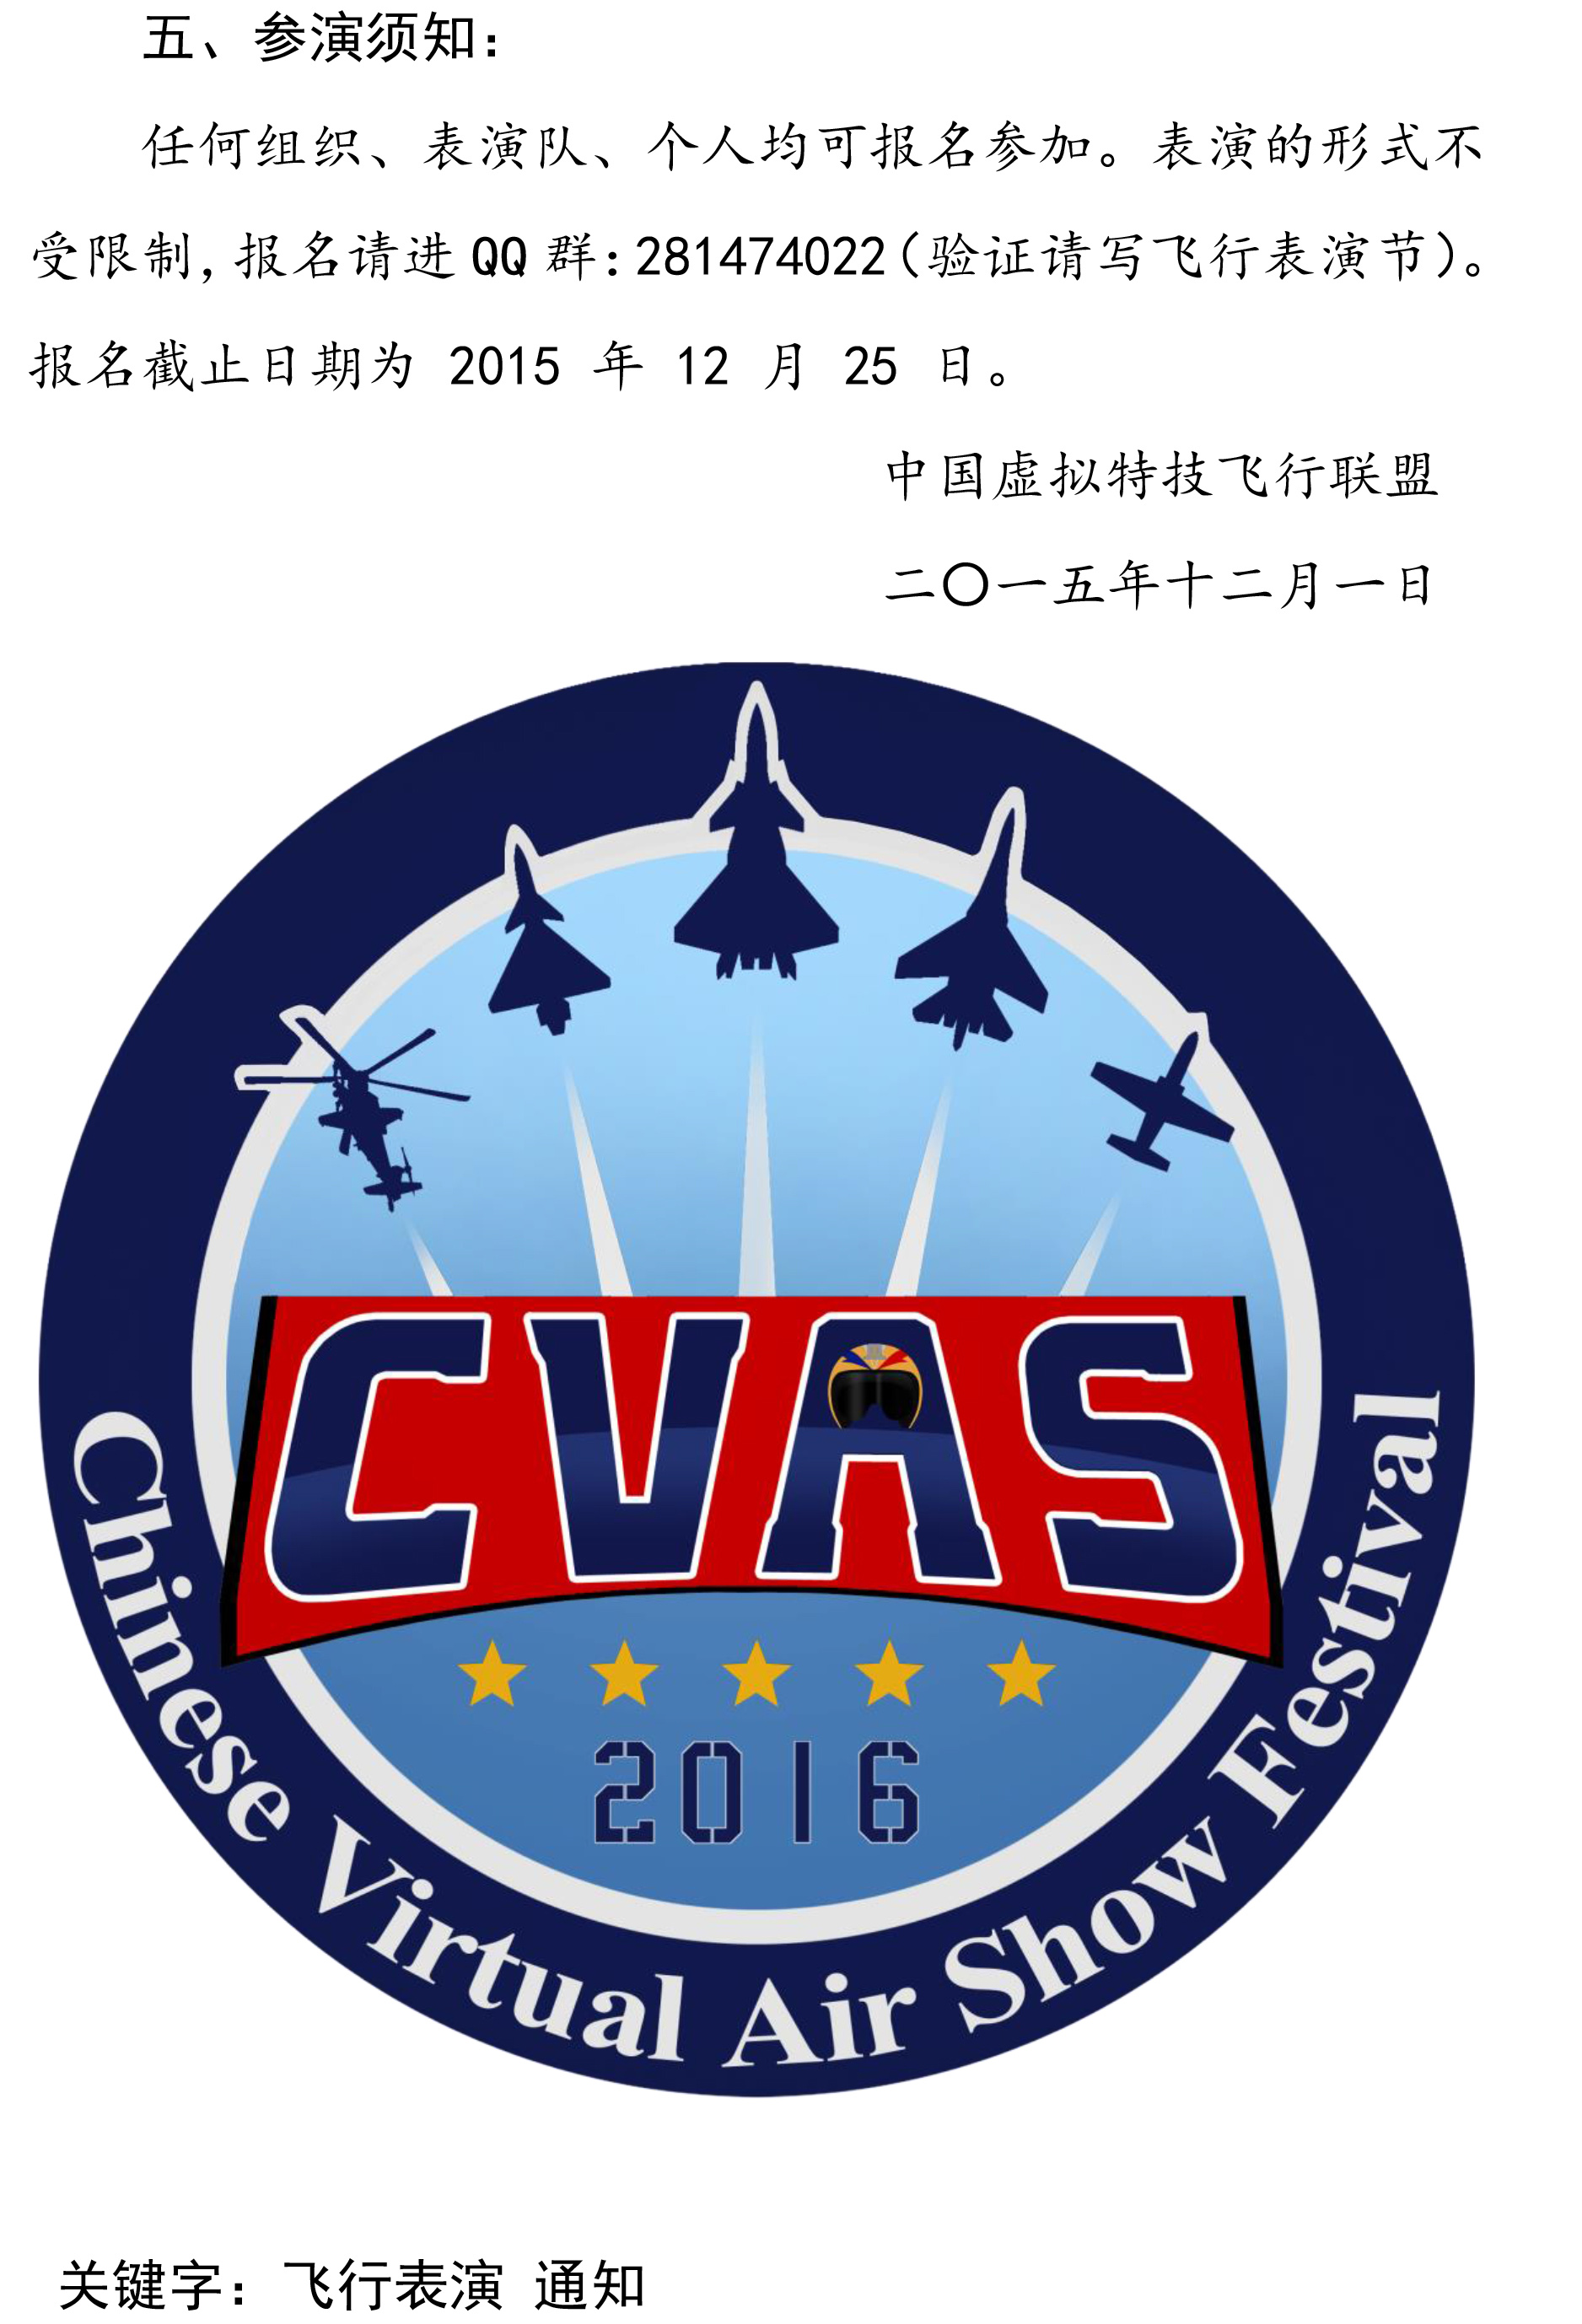 关于2016年虚拟飞行表演节的通知-3.jpg